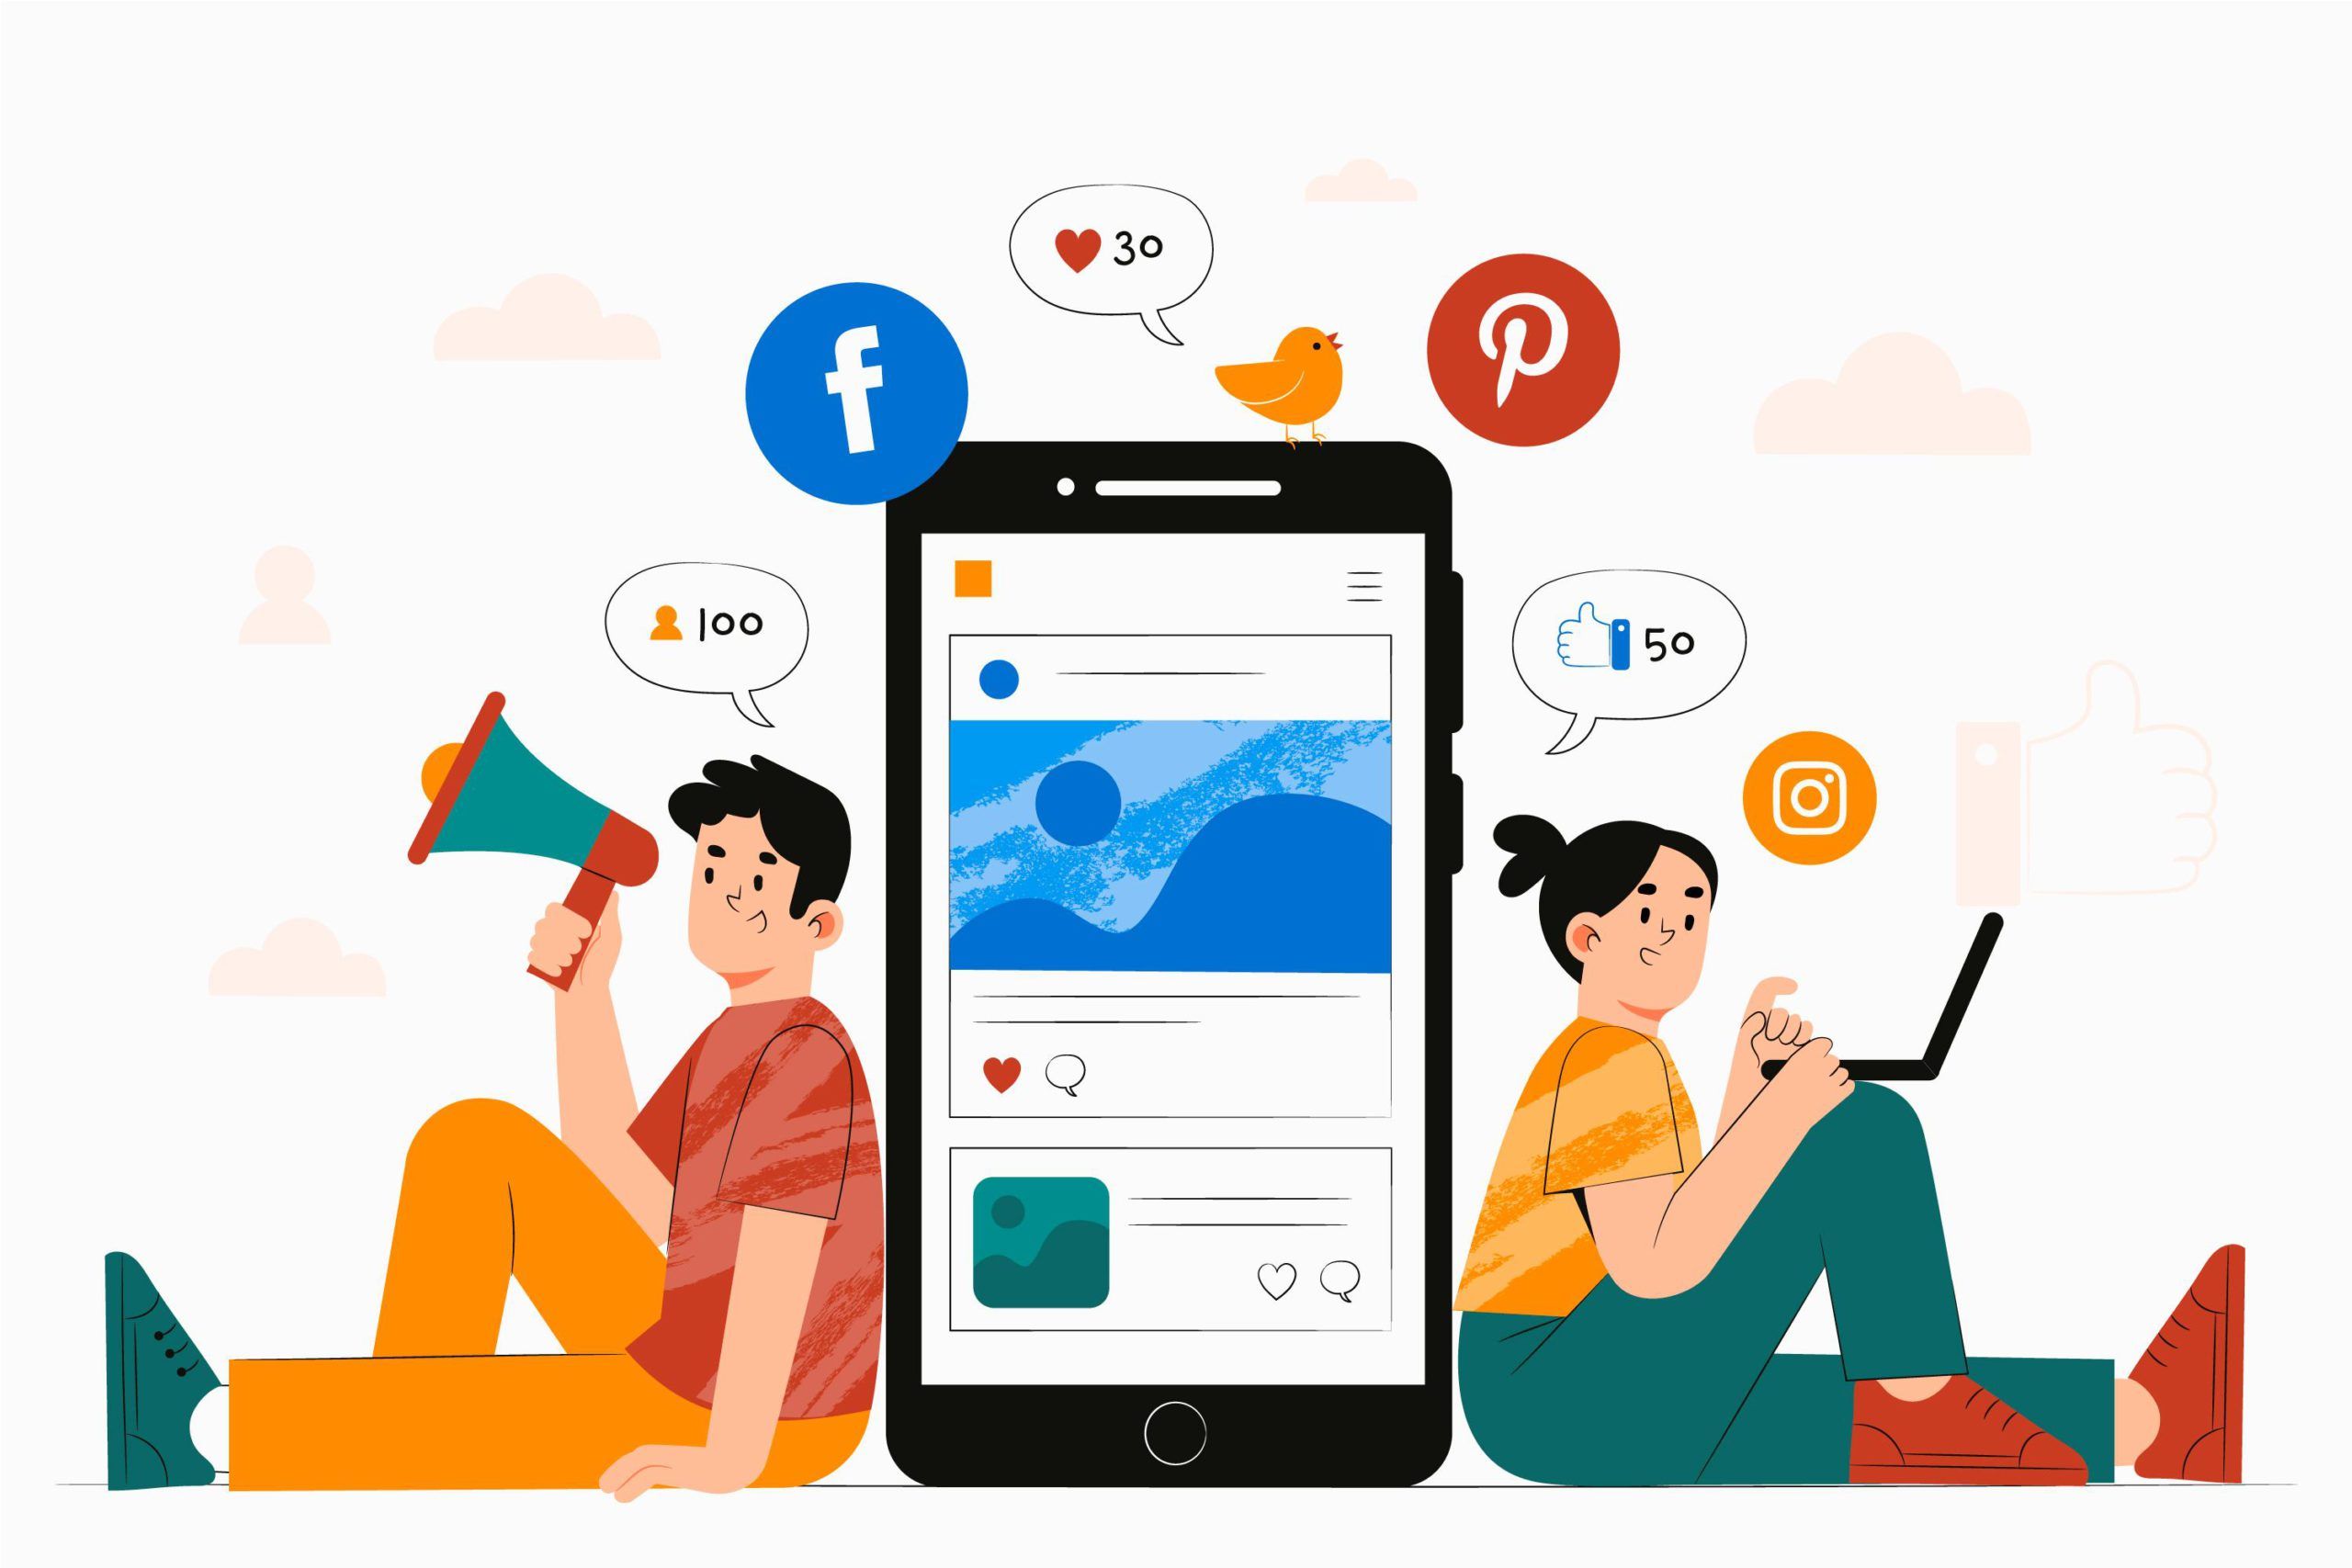 Vetor com dois profissionais ao lado de um celular mostrando uma rede social, representando o trabalho de uma ferramenta de automação de marketing.